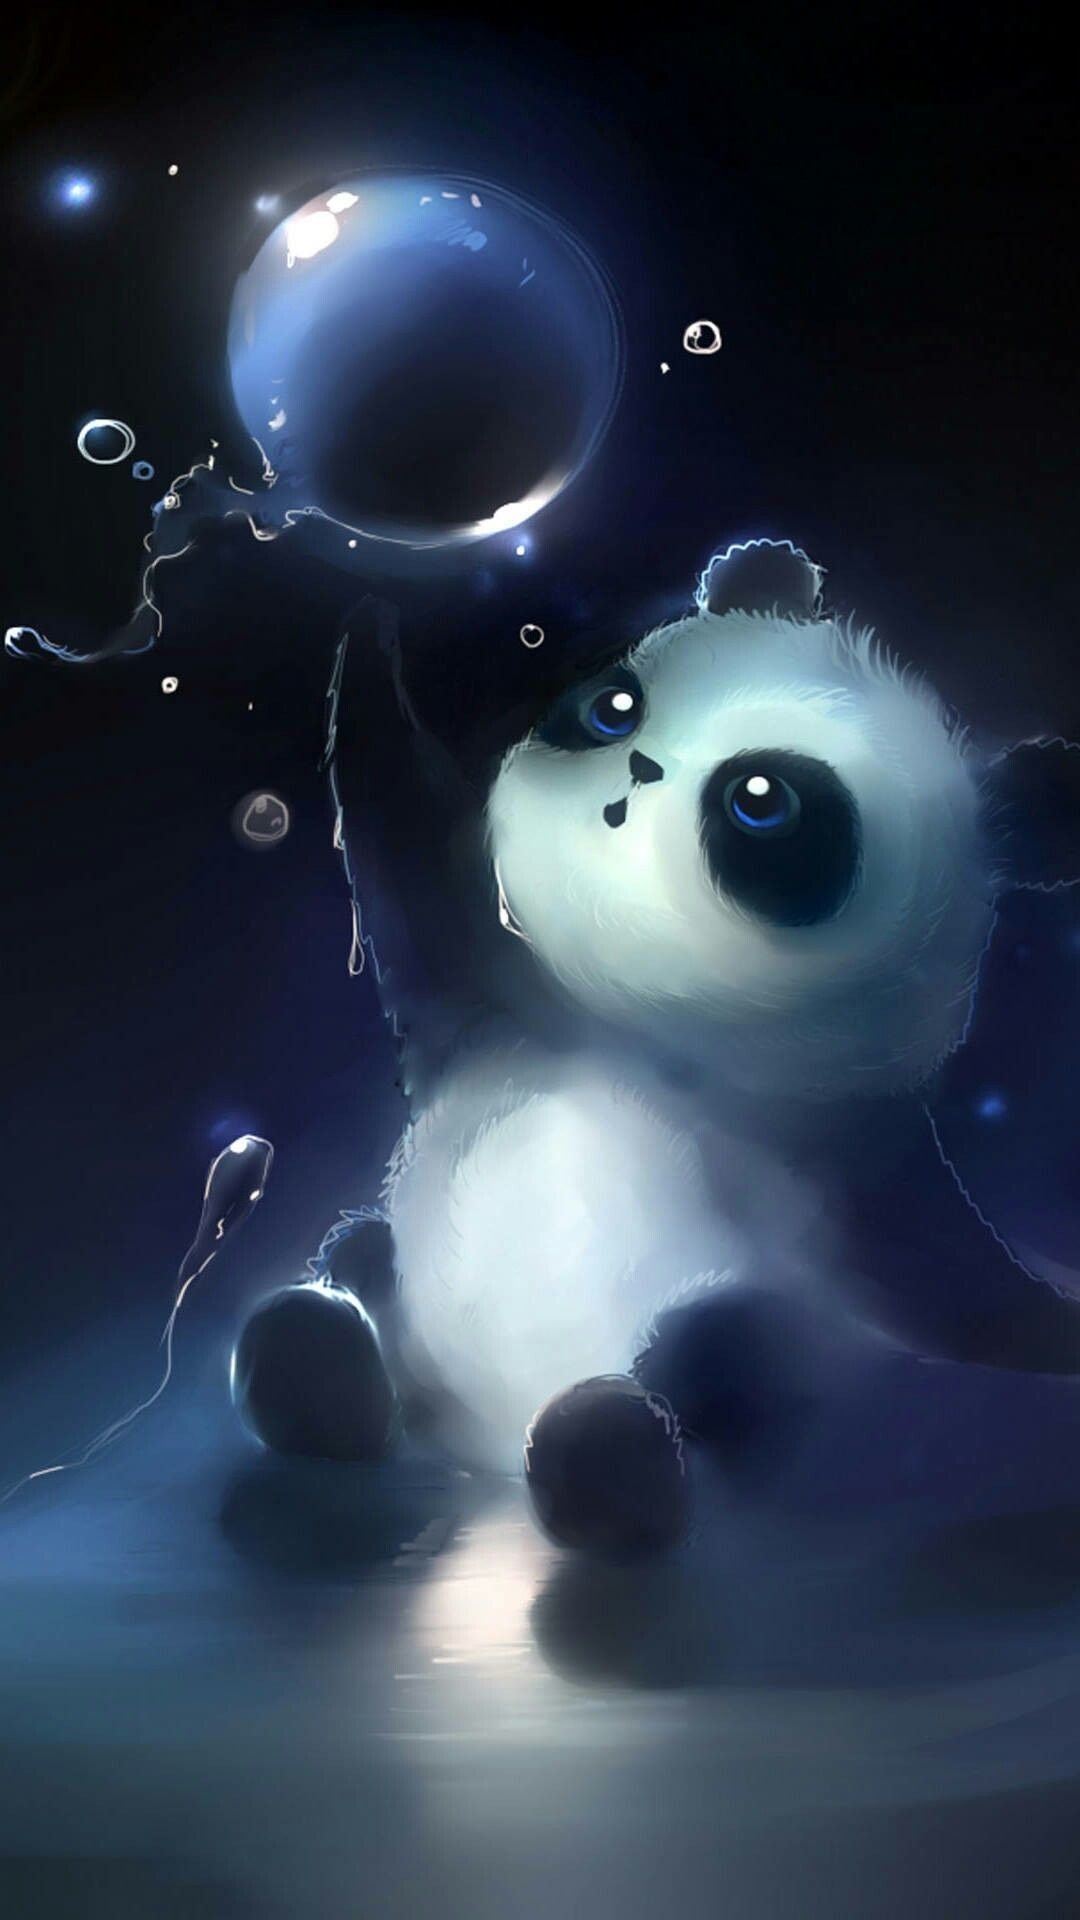 Panda Images  Free Download on Freepik